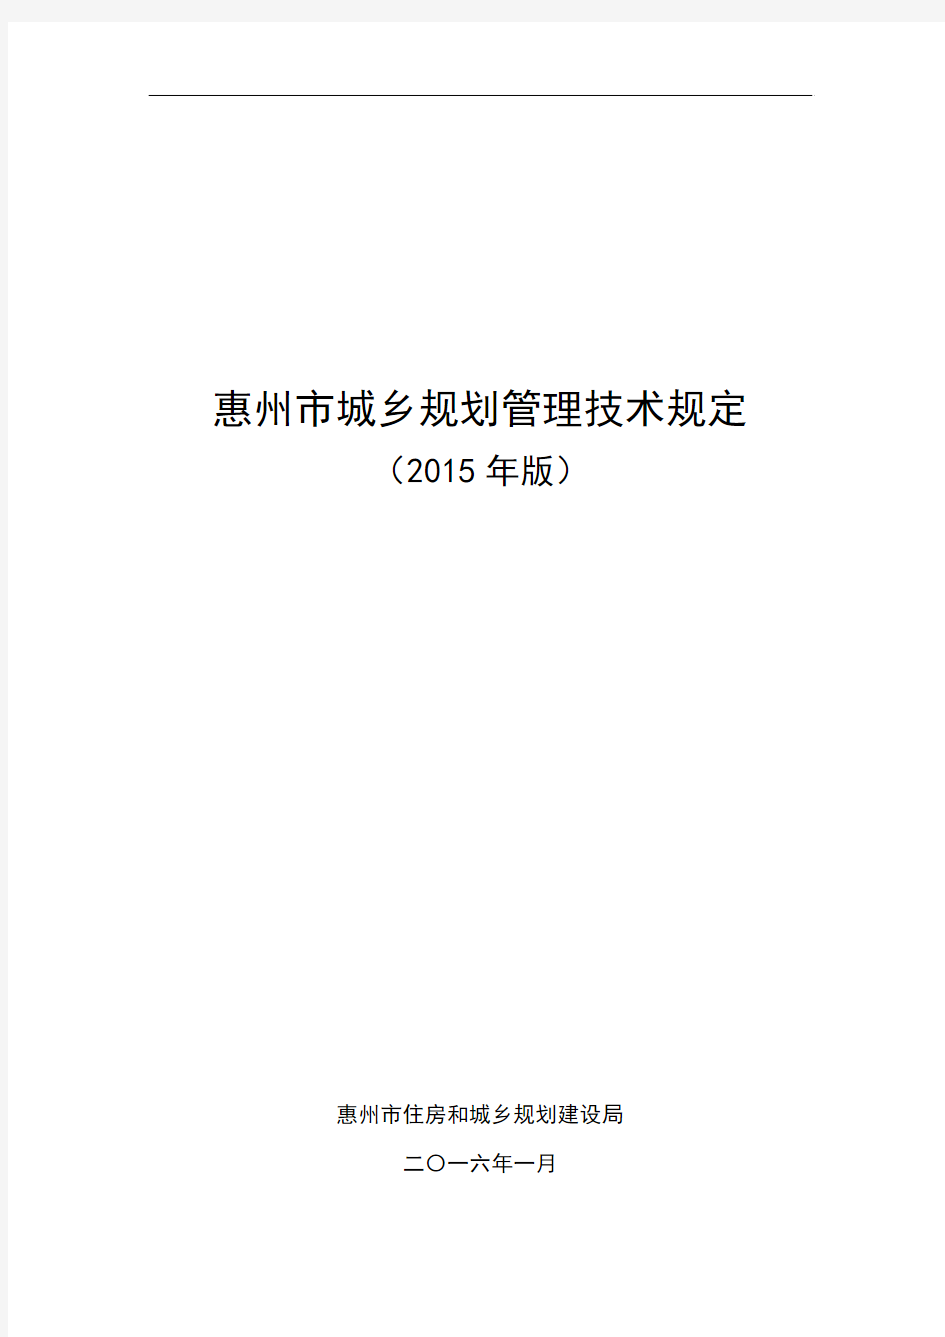 《惠州市城乡规划管理技术规定(2015版)》